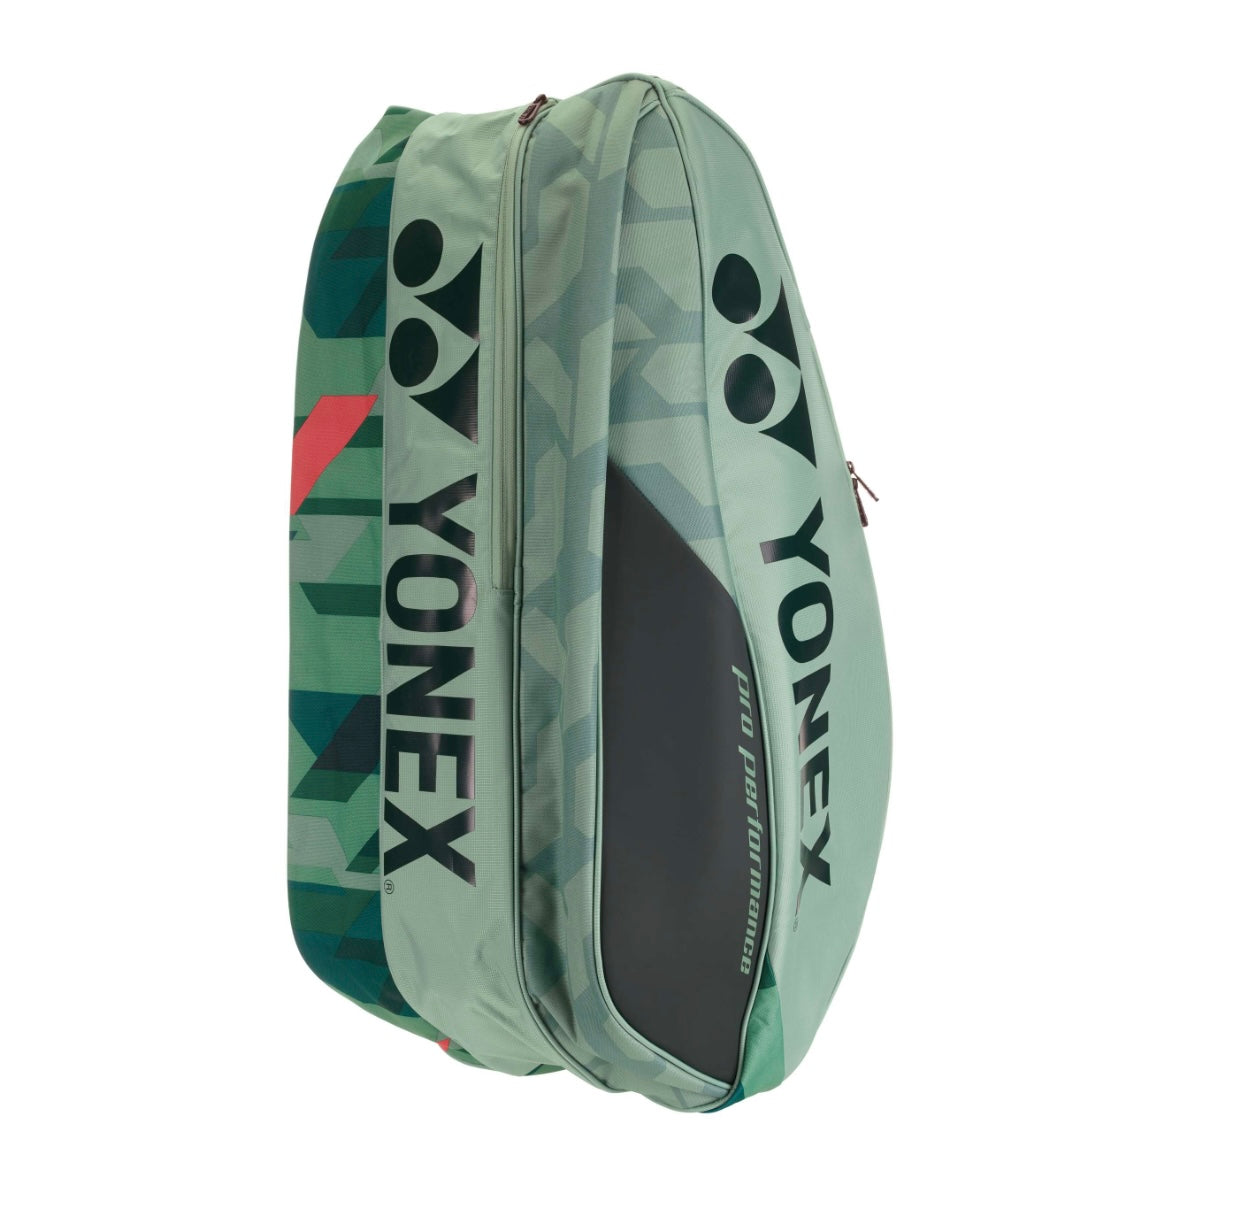 Yonex Pro 9 Pack Racquet Bag (Olive)